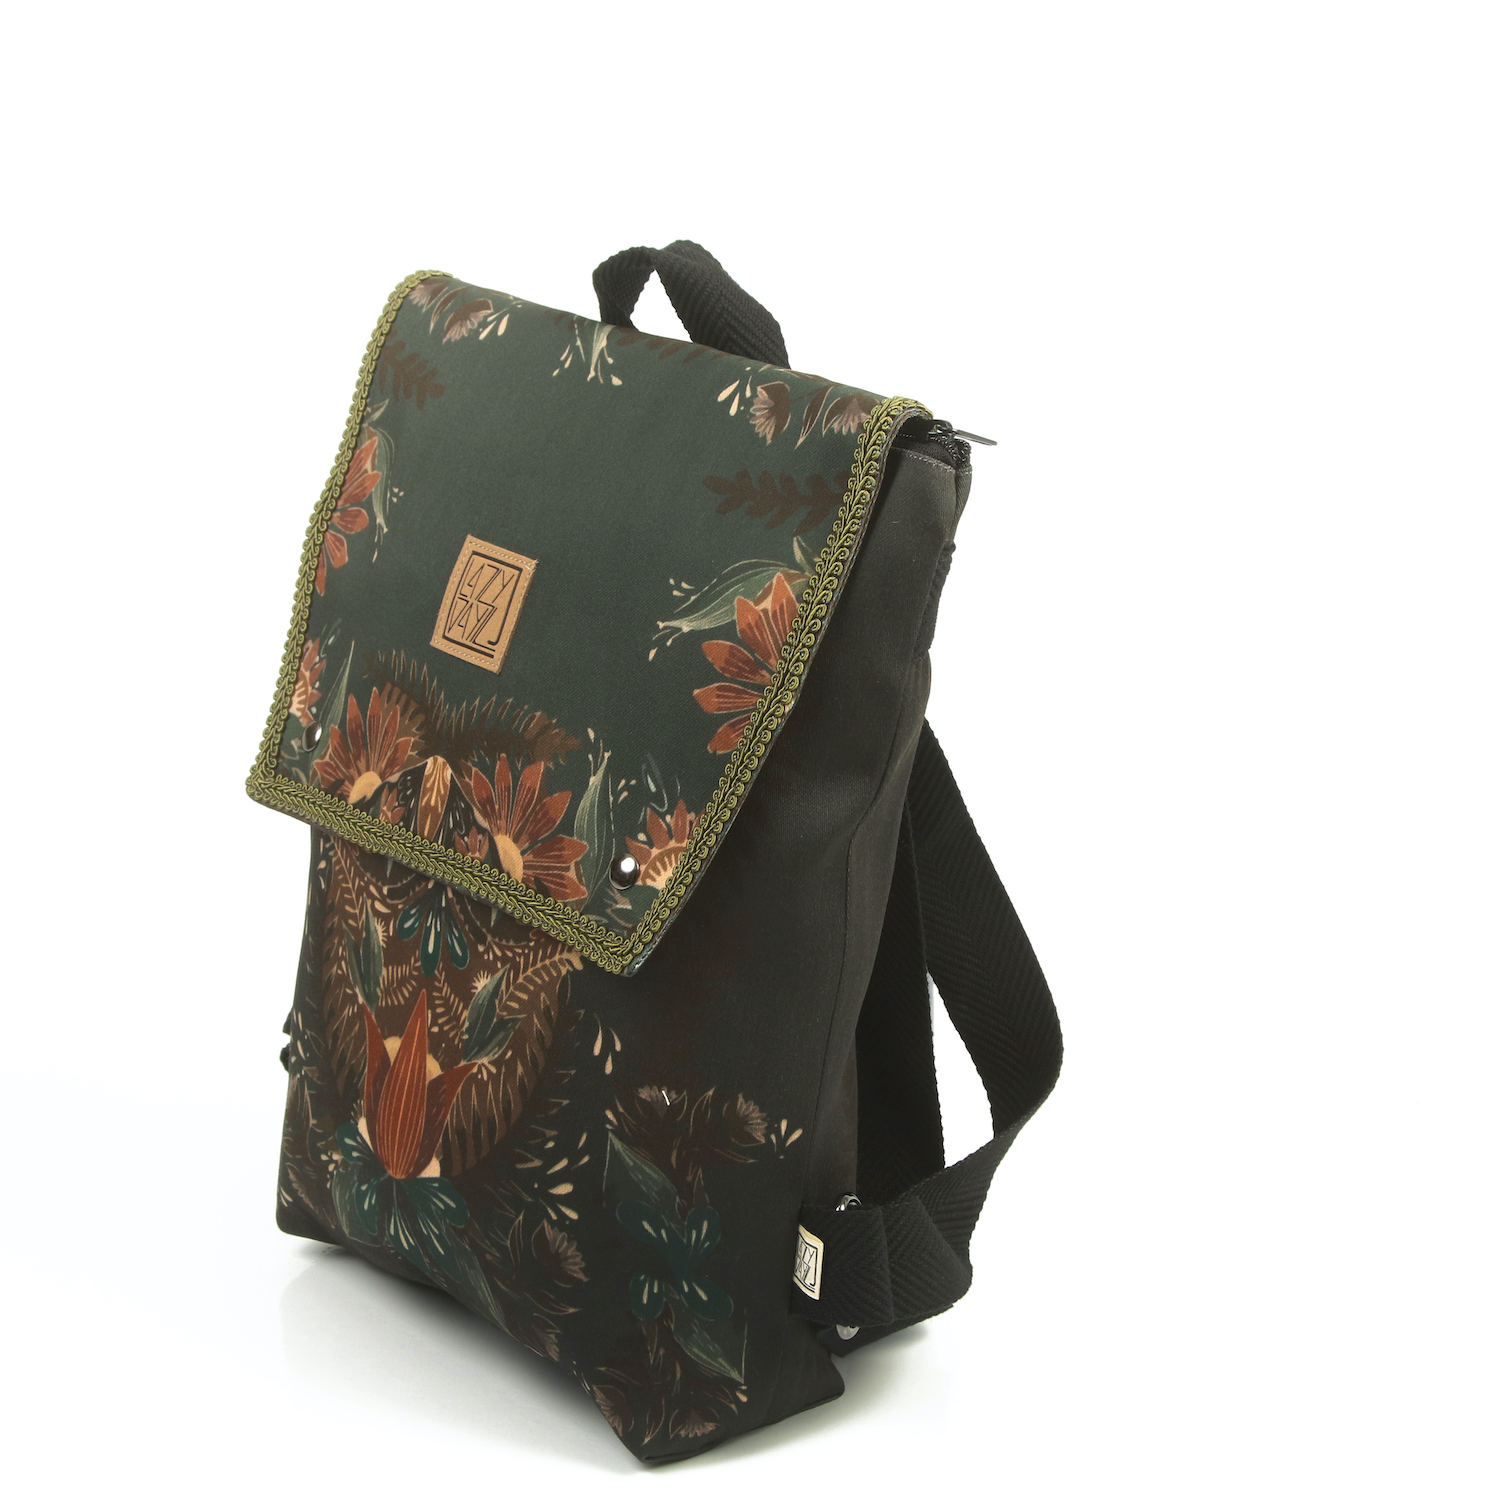 LazyDayz-Designs-Backpack-γυναικείος-σάκος-πλάτης-χειροποίητος bb0706b